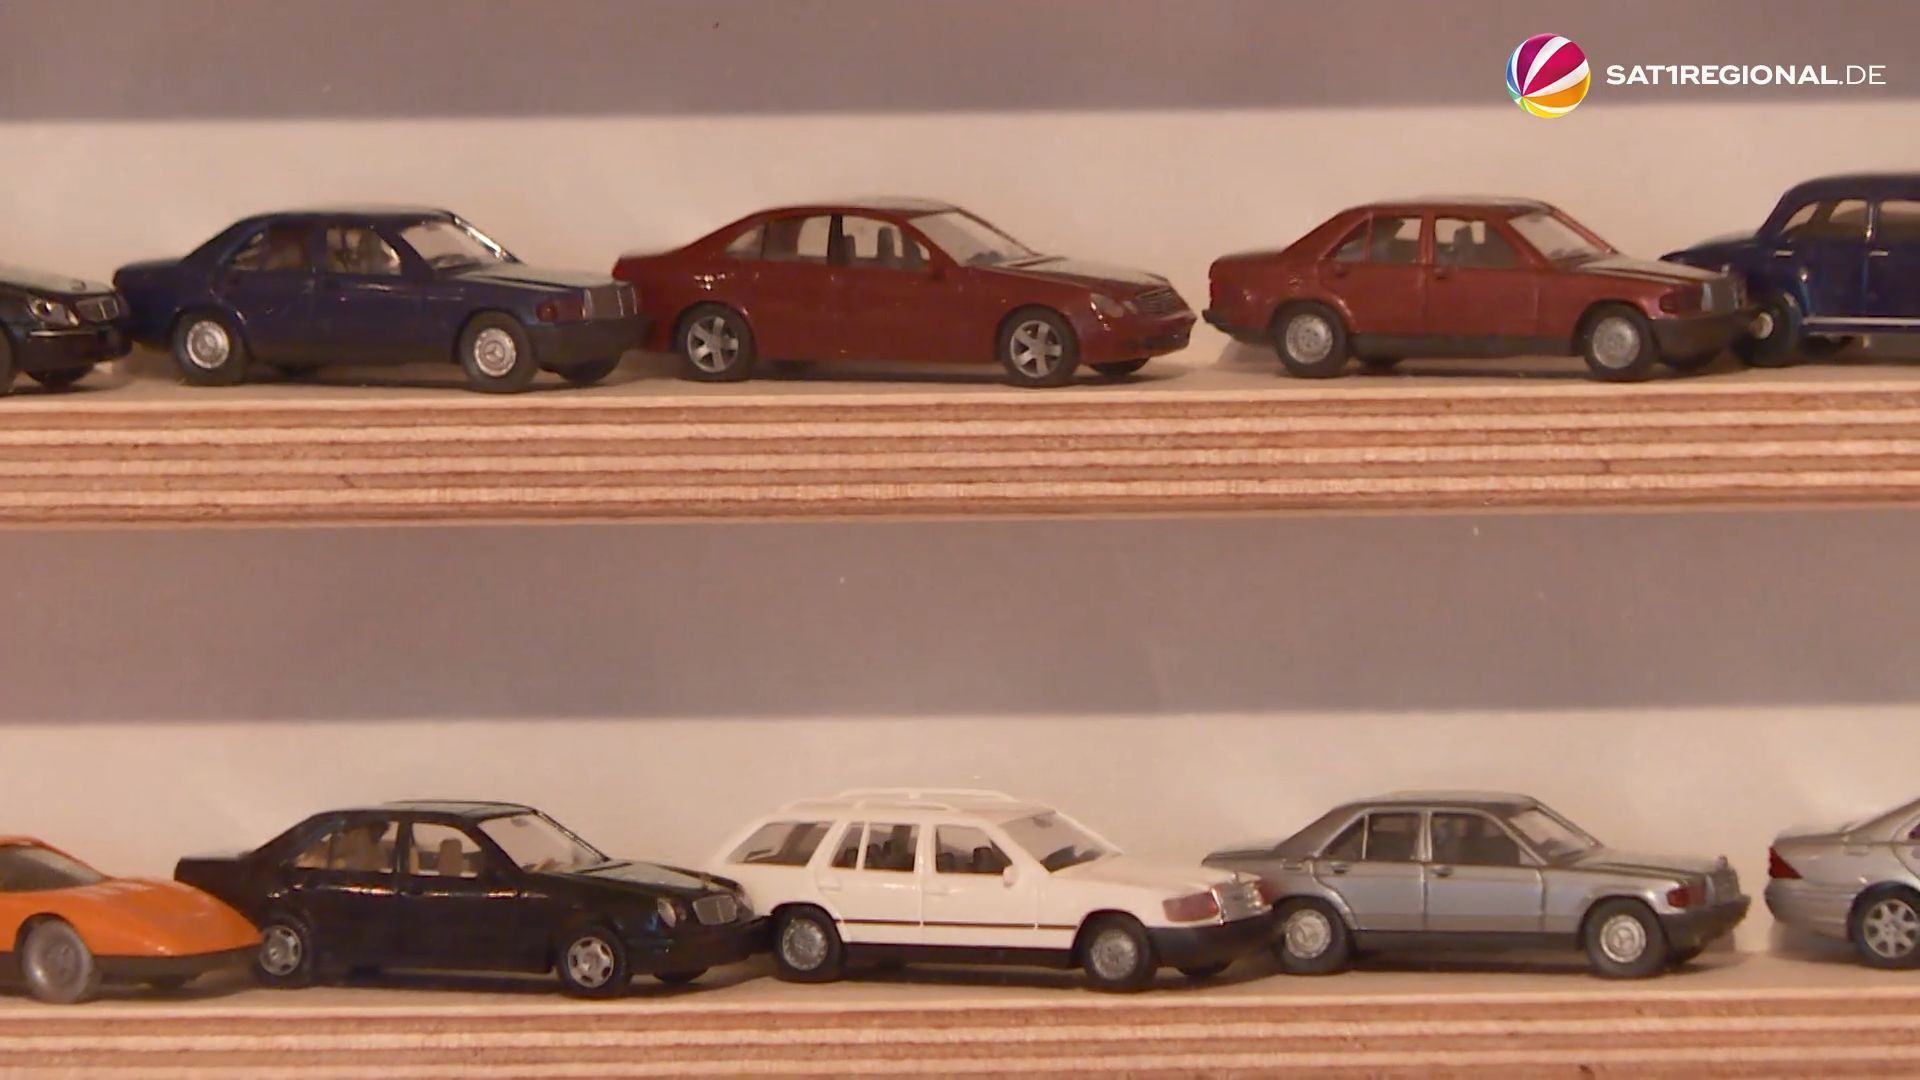 Miniaturauto-Sammlung: Wolfsburger hat 10.000 Modellautos im Haus